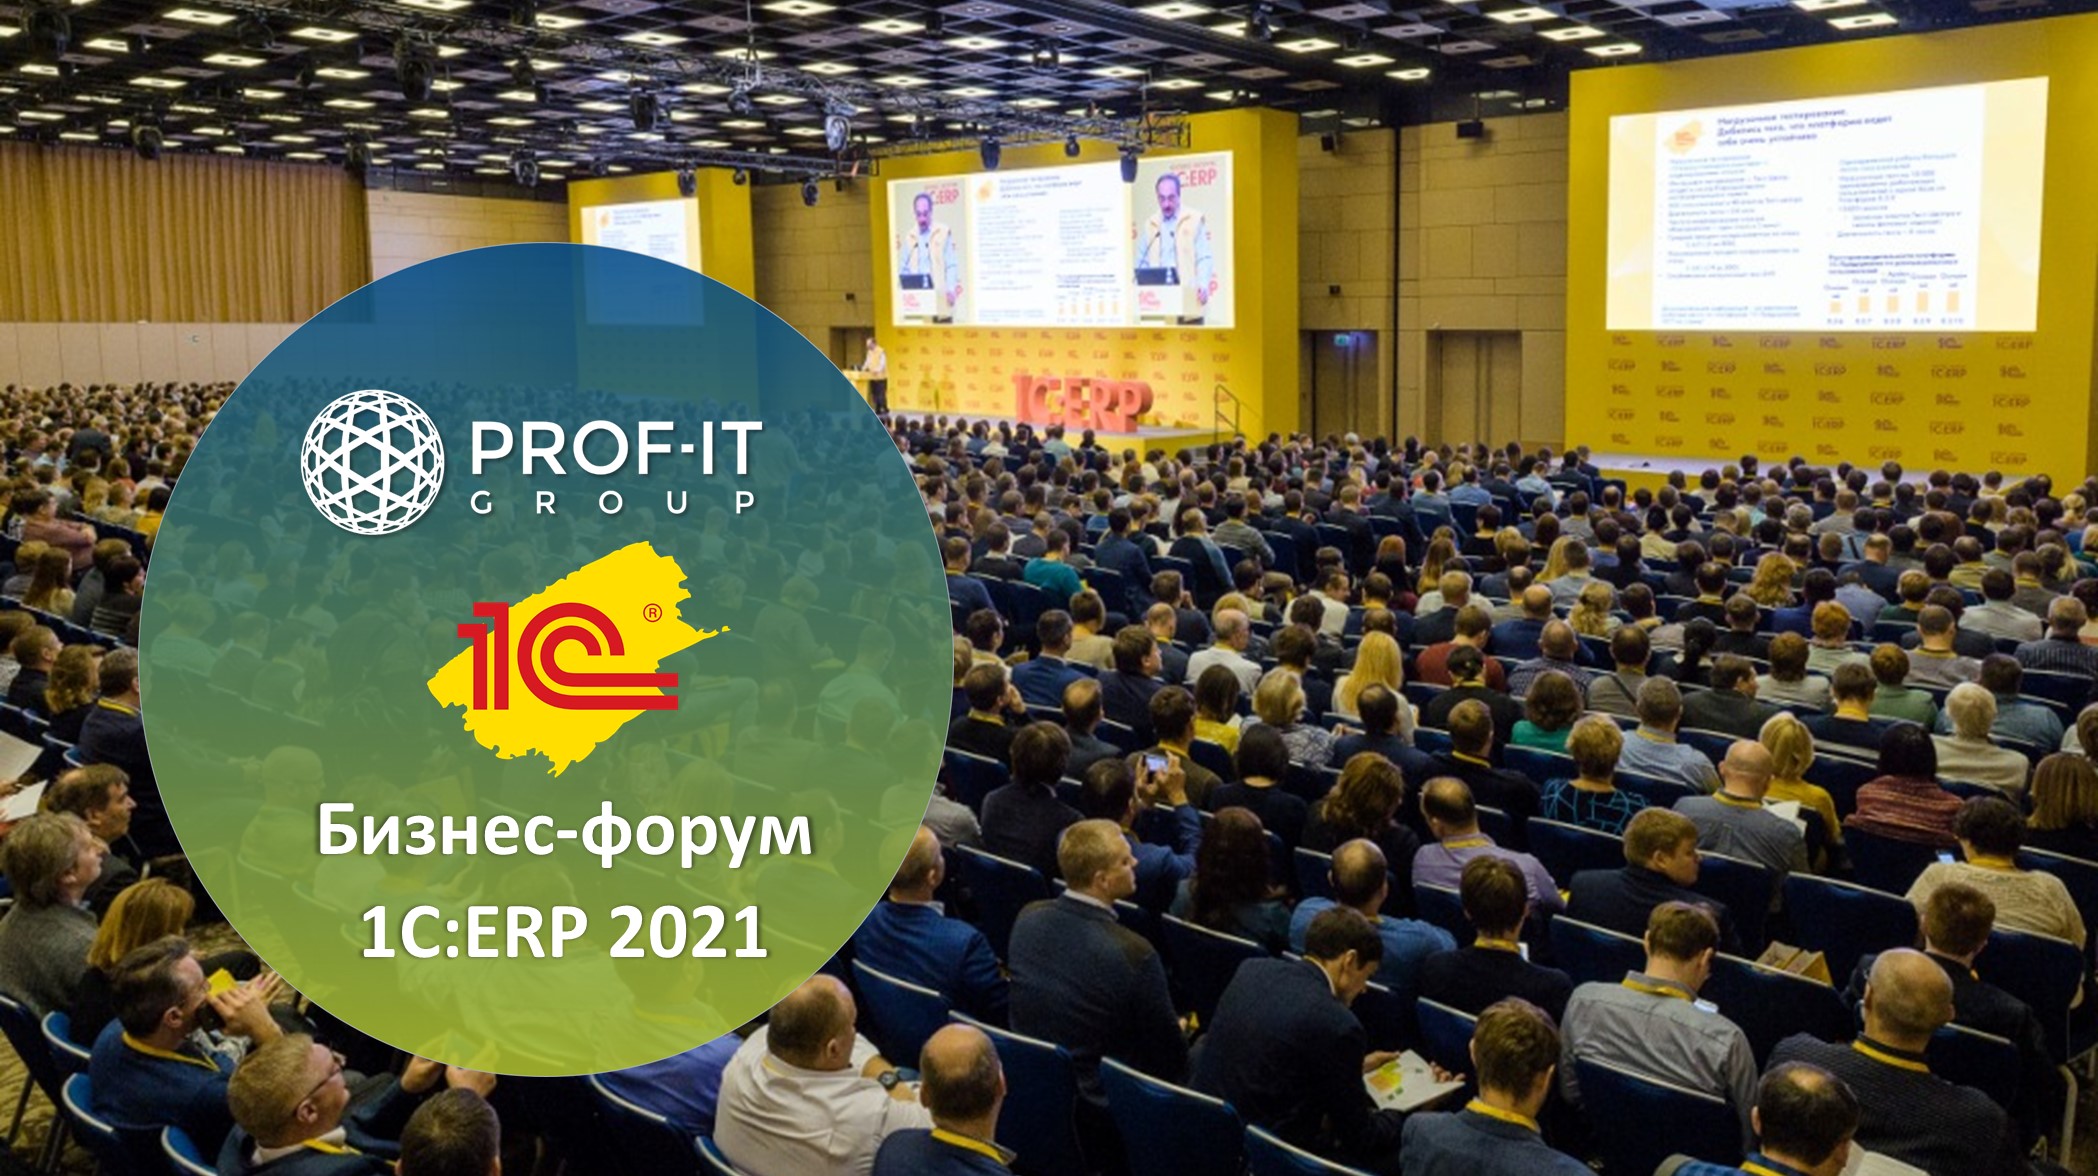 PROF-IT GROUP поделится своей экспертизой на Бизнес-форуме 1C:ERP 2021